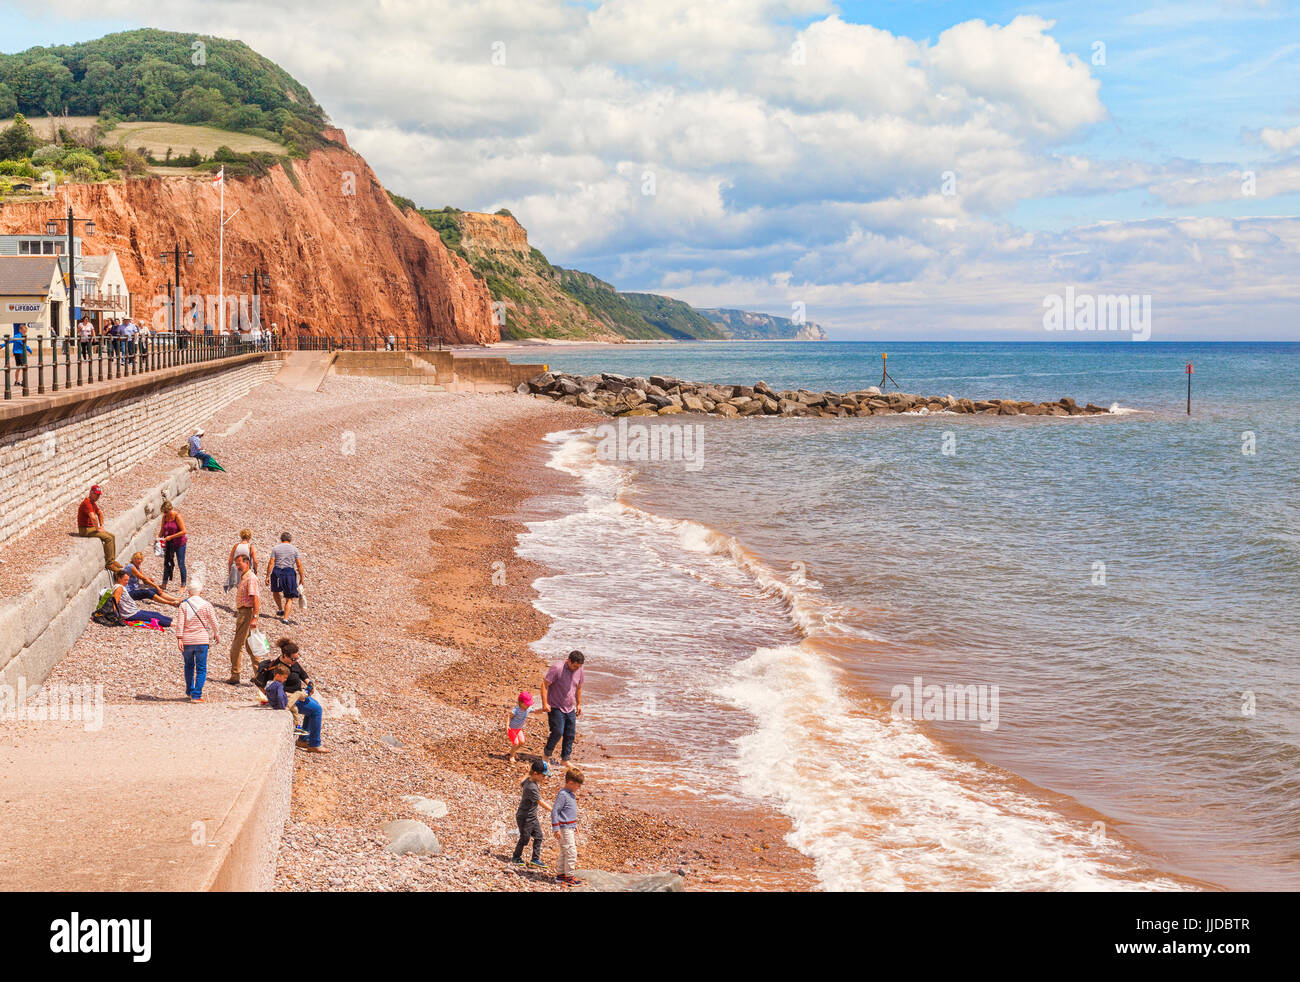 3 Luglio 2017: Sidmouth, Dorset, England, Regno Unito - visitatori sulla spiaggia di ciottoli su un luminoso giorno d'estate. Foto Stock